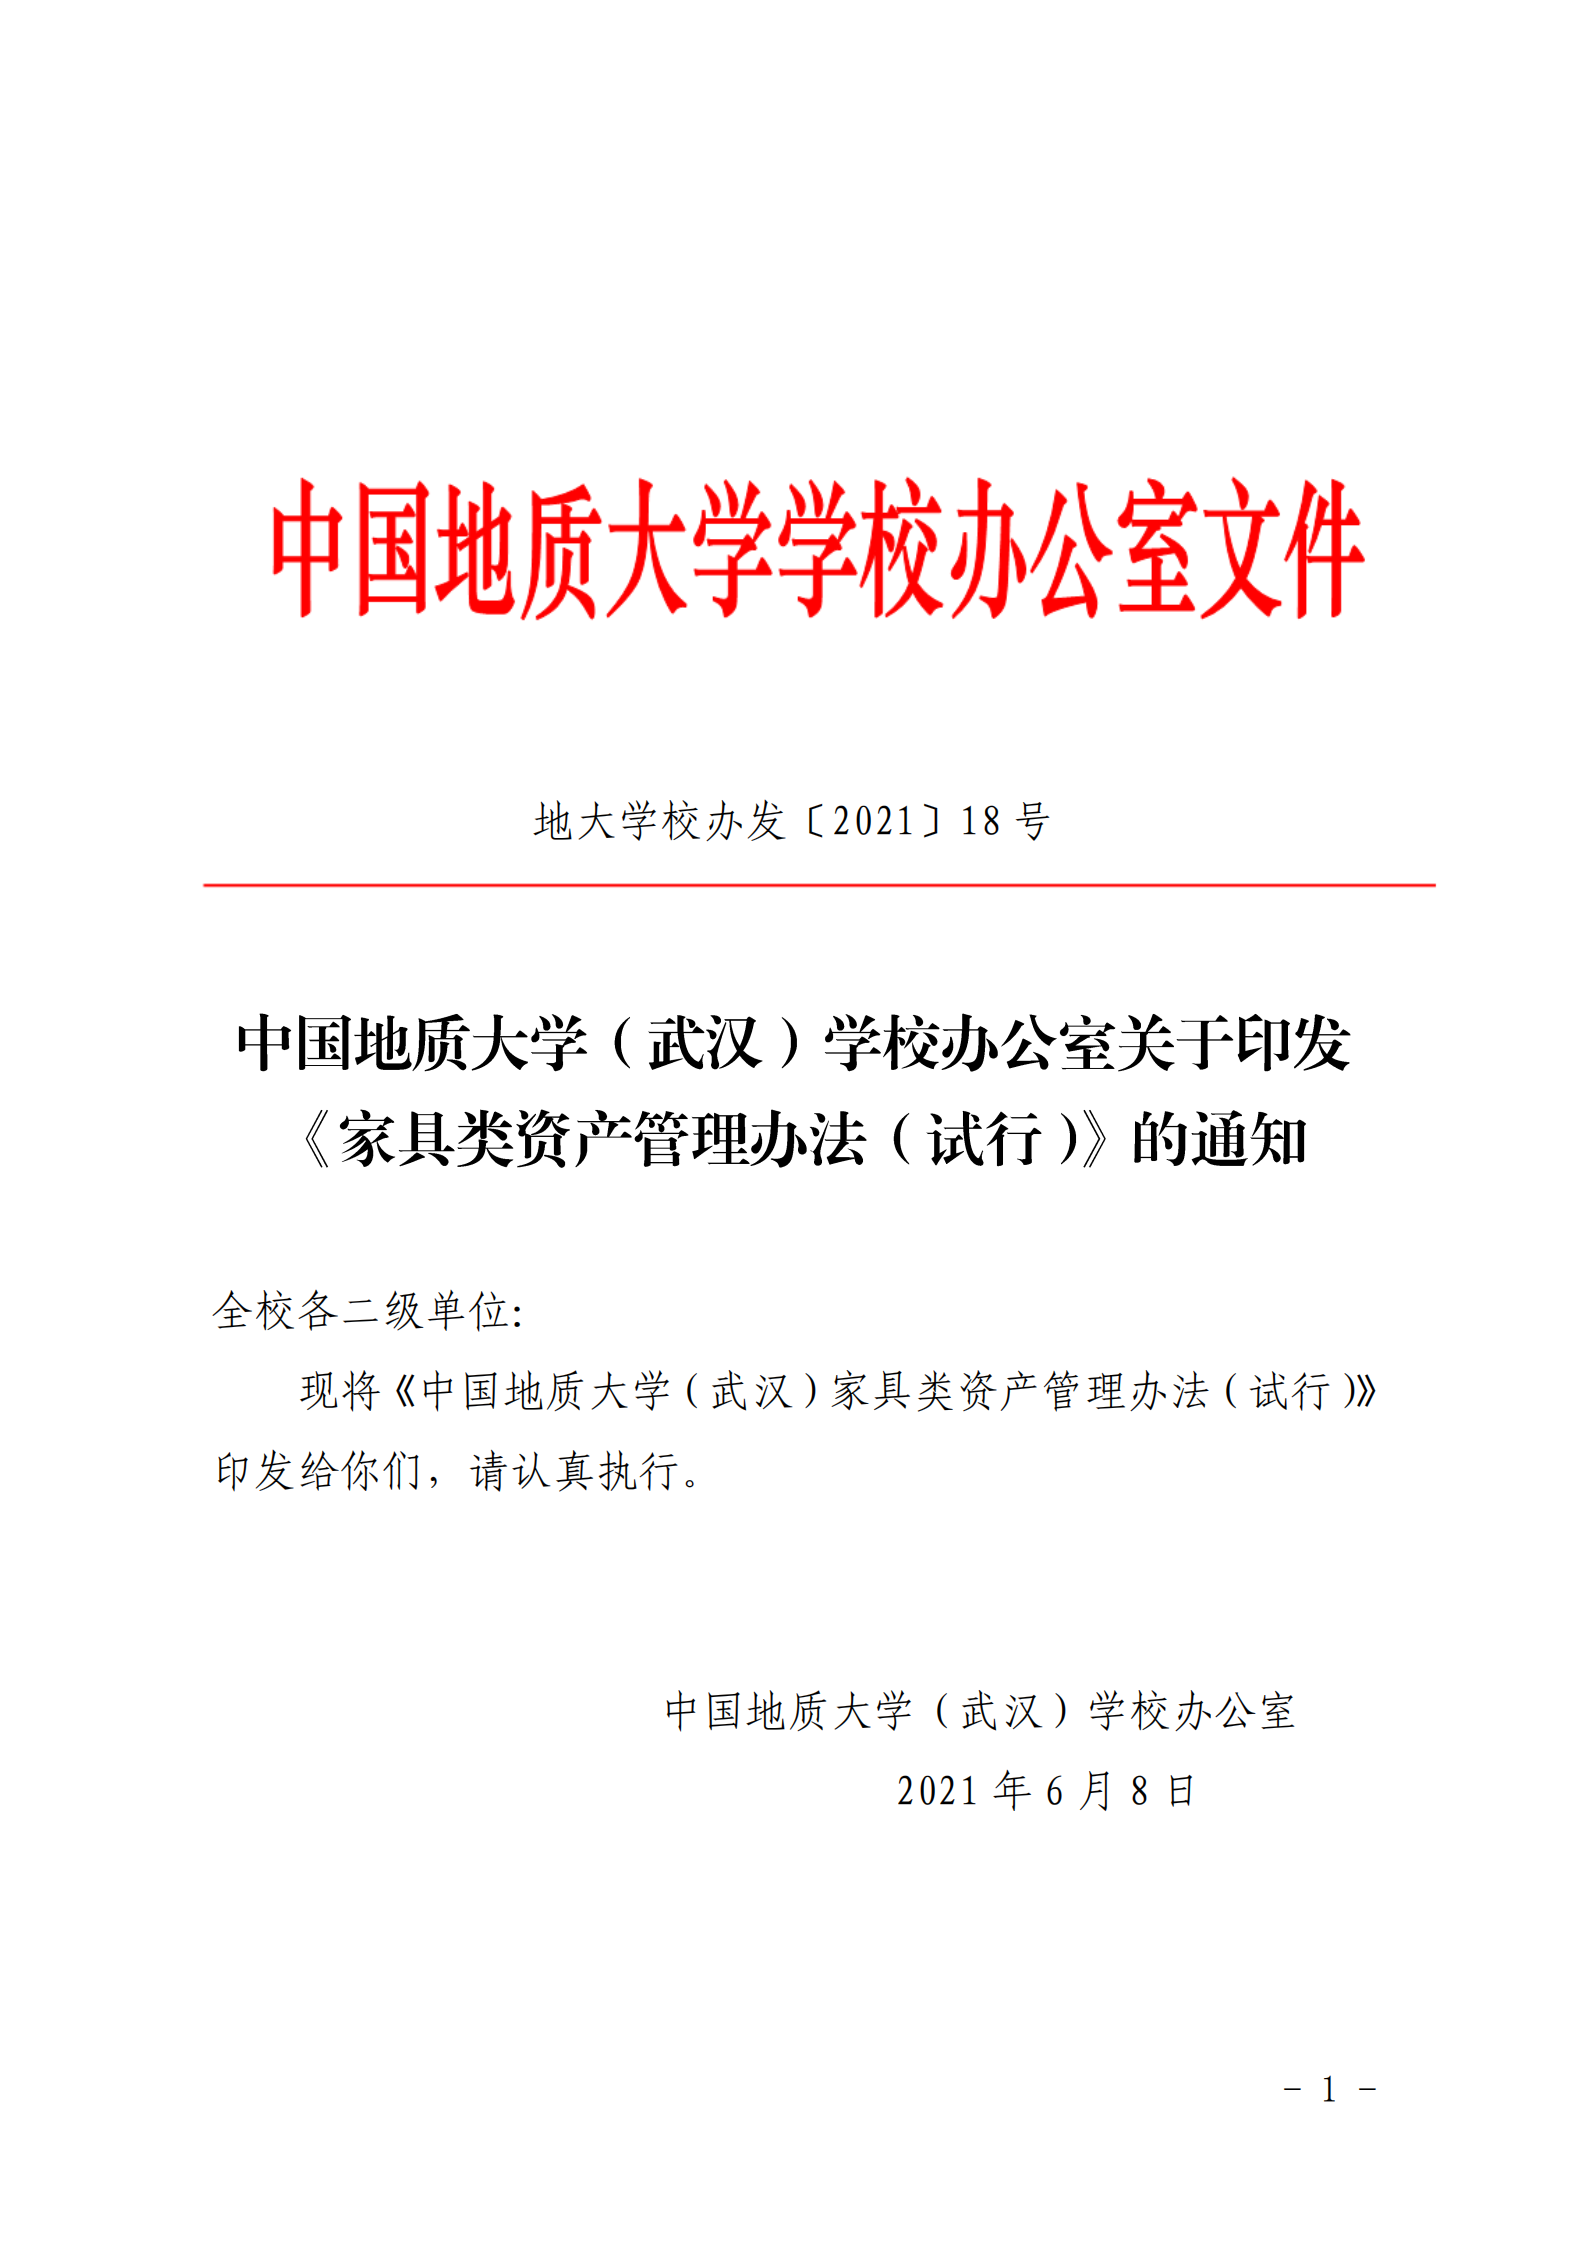 中国地质大学武汉学校办公室关于印发家具类资产管理办法试行的通知